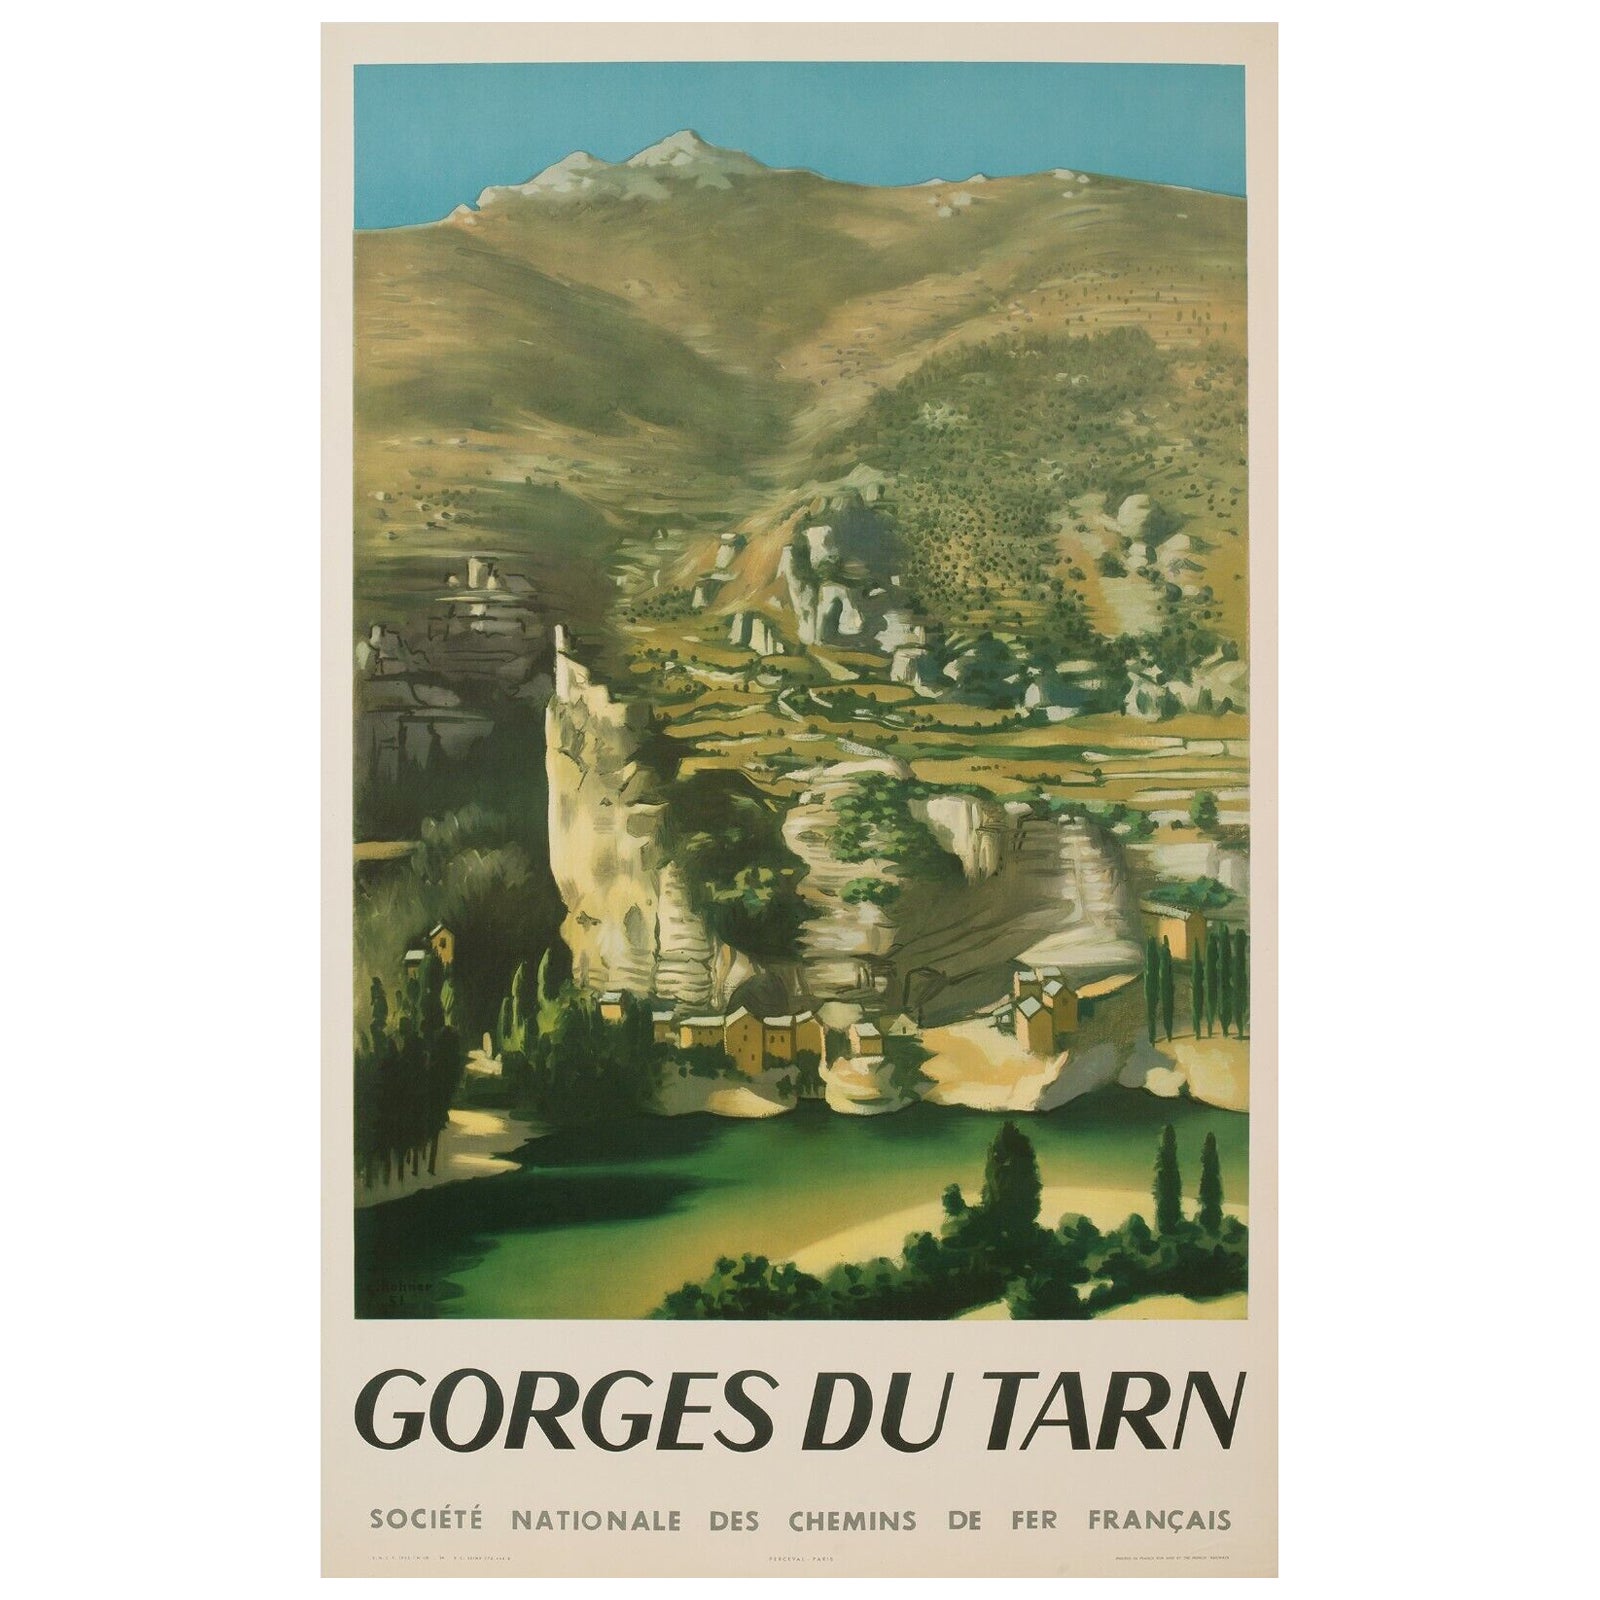 Original Travel Poster-Rohner-Provence Landscape Tarn Gorges, 1951 For Sale